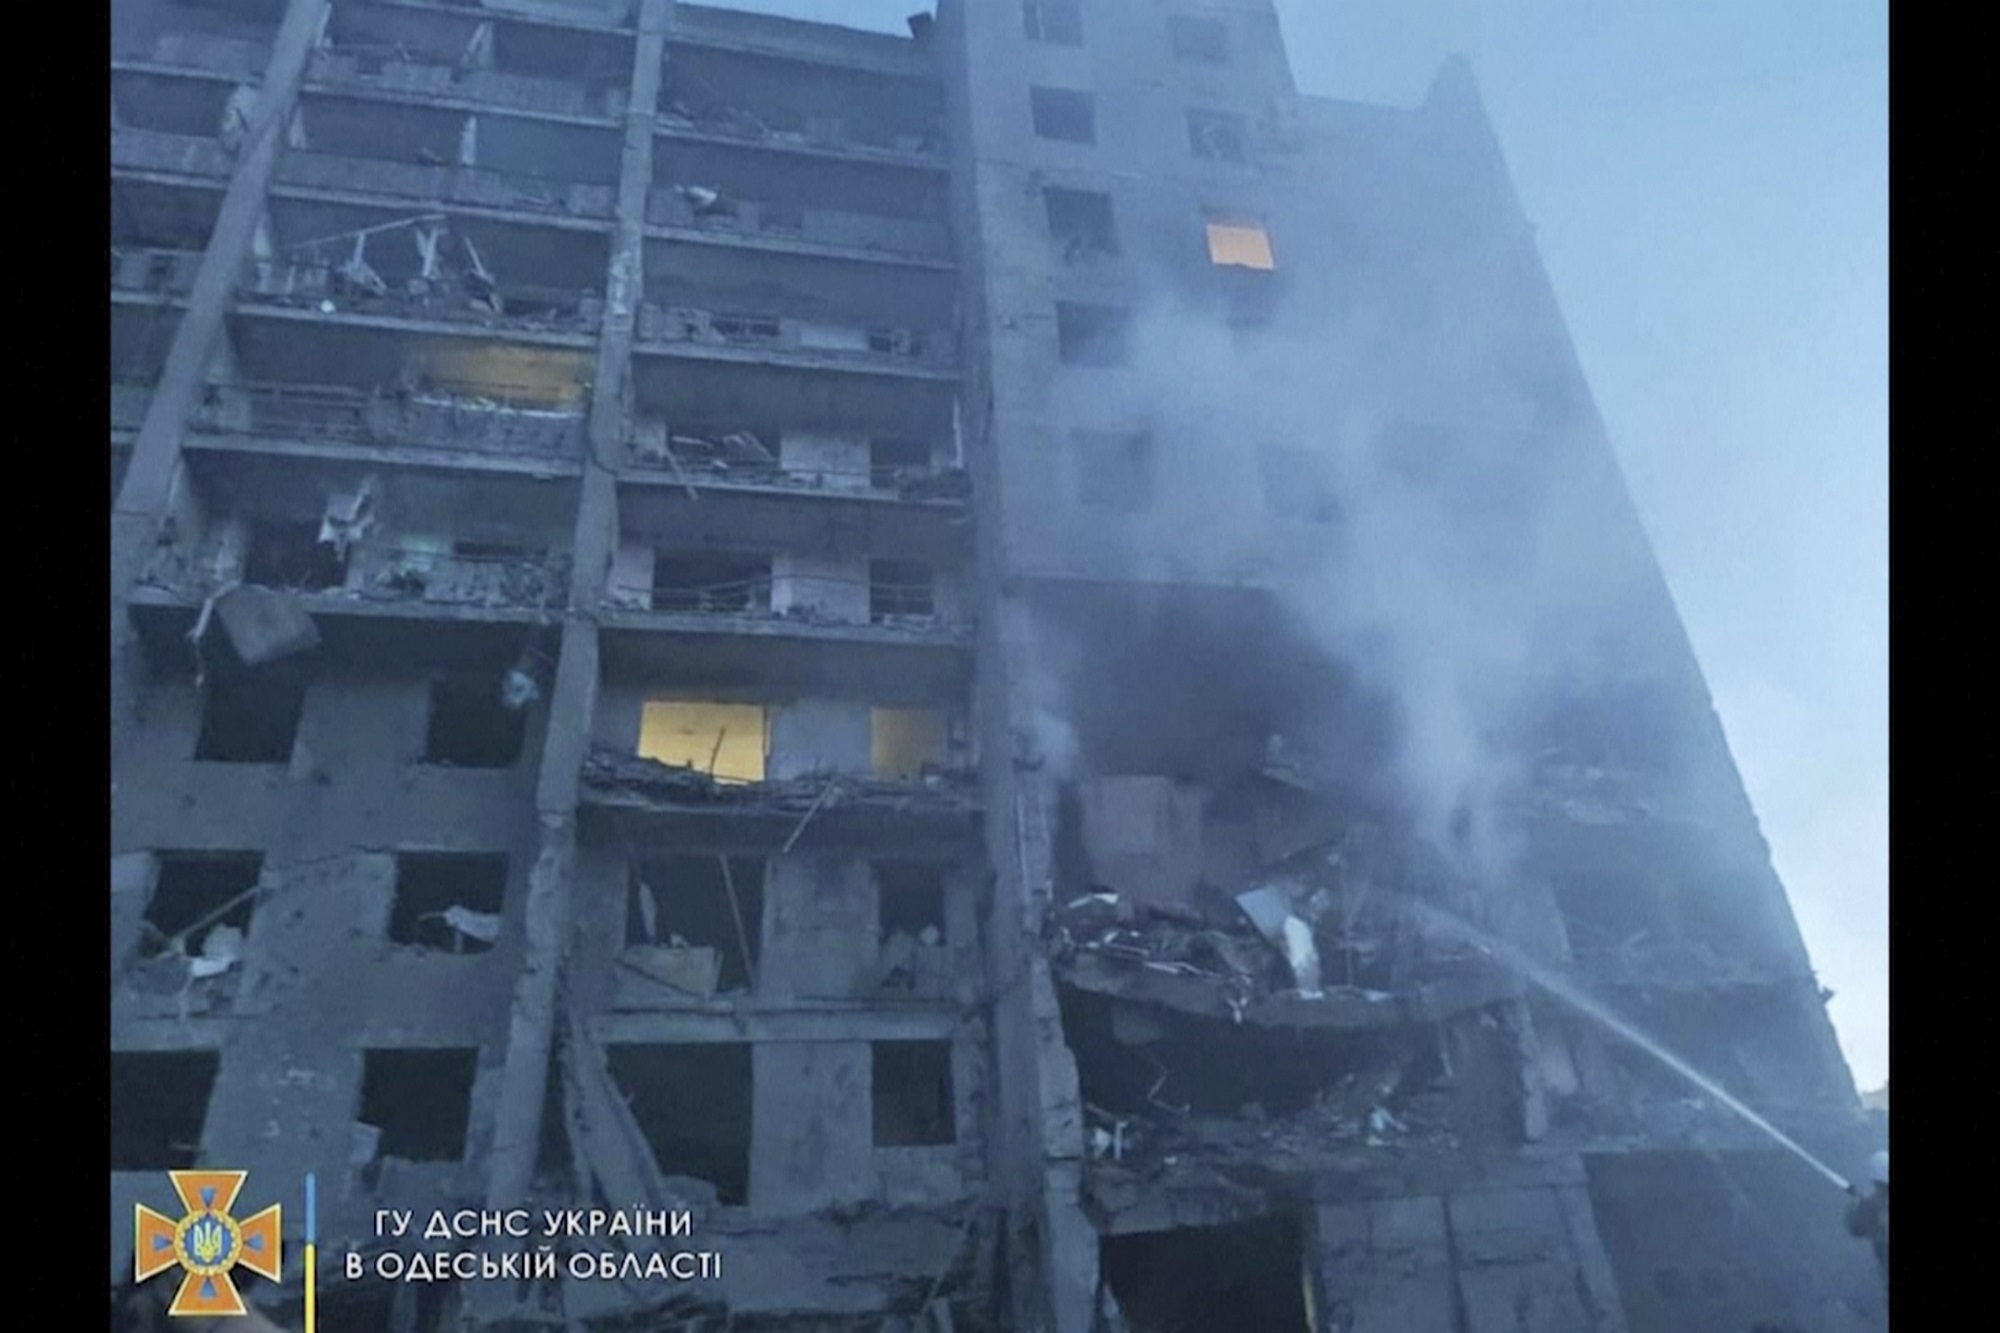 Ουκρανία: Αυξάνεται ο αριθμός των θυμάτων από το πλήγμα σε πολυκατοικία – Λισιτσάνσκ: Στρατιώτες κινδυνεύουν να περικυκλωθούν σε διυλιστήριο